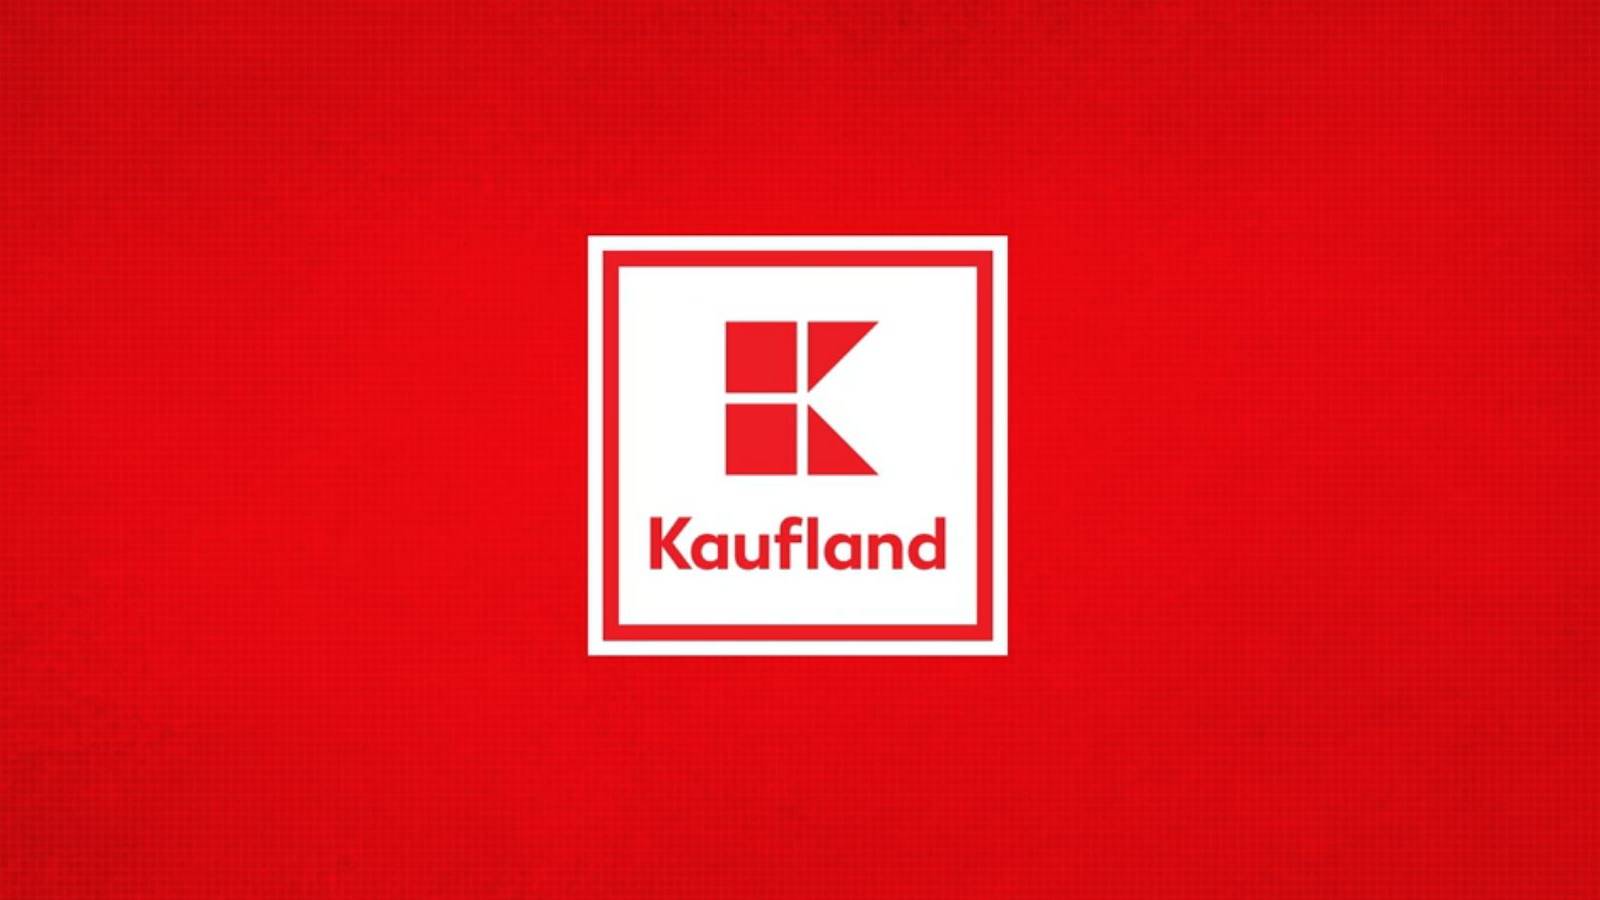 Kaufland-kunder informeret OFFICIELT Mange rumænere kendte ikke loyalitetskortet